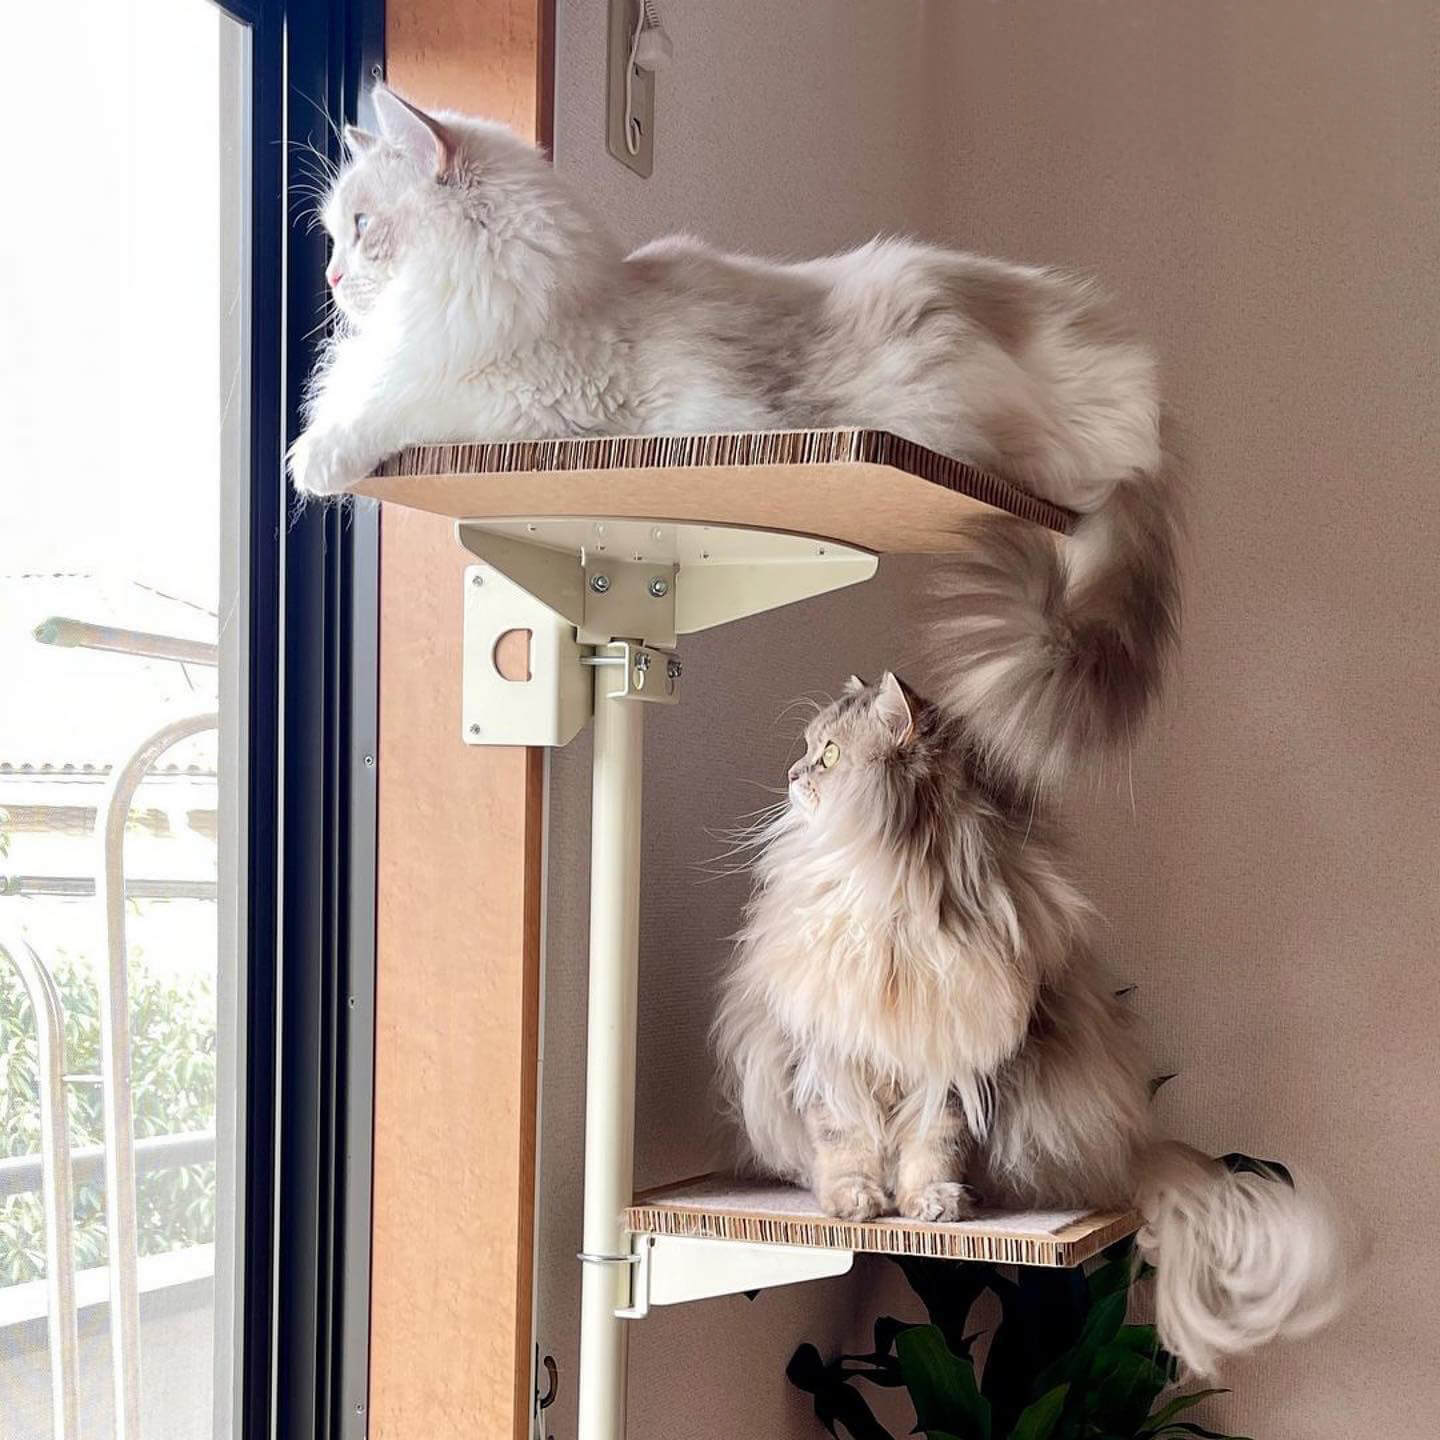 木製の窓枠に取り付けられるキャットタワー「ねこゴロン」で猫がくつろぐ様子